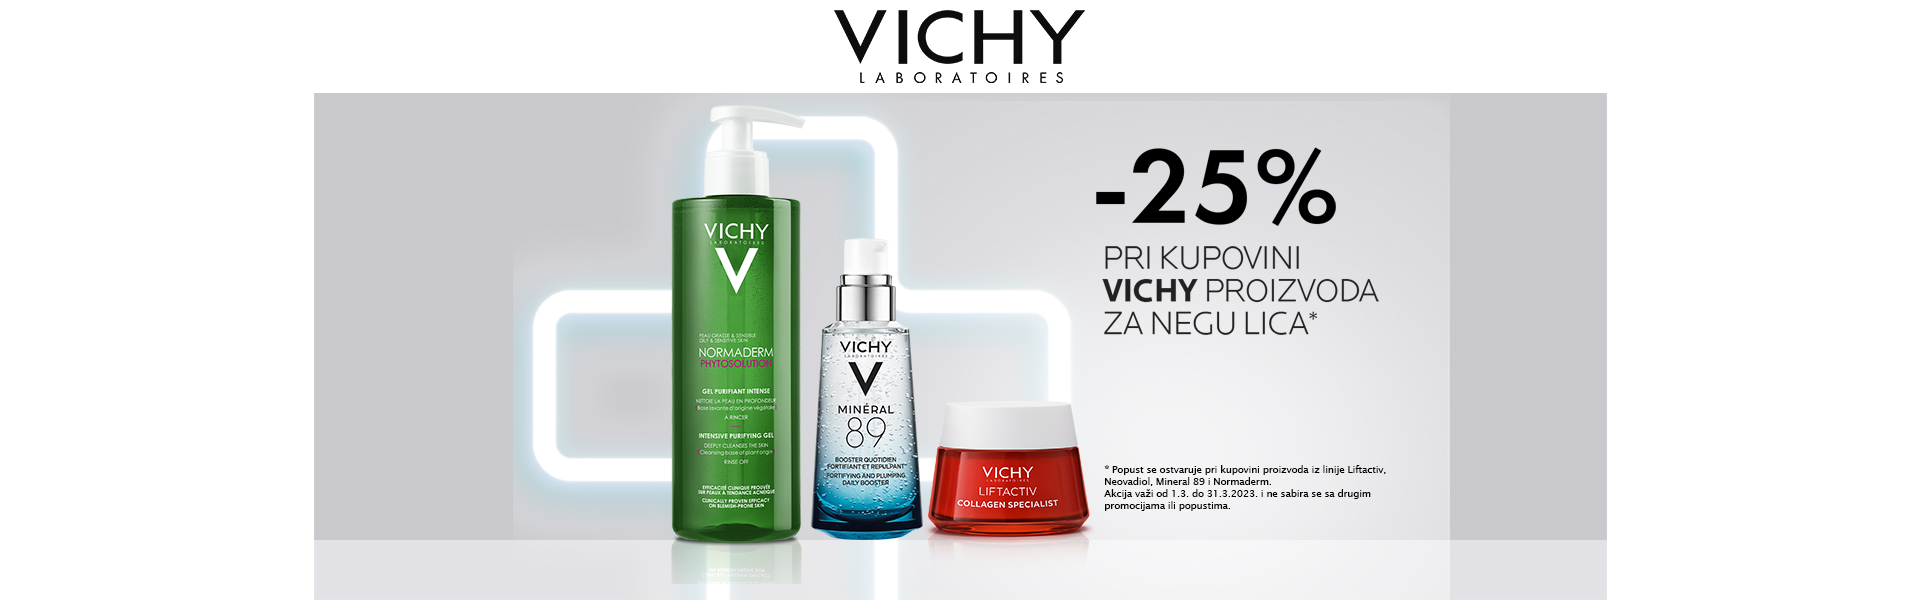 Vichy face